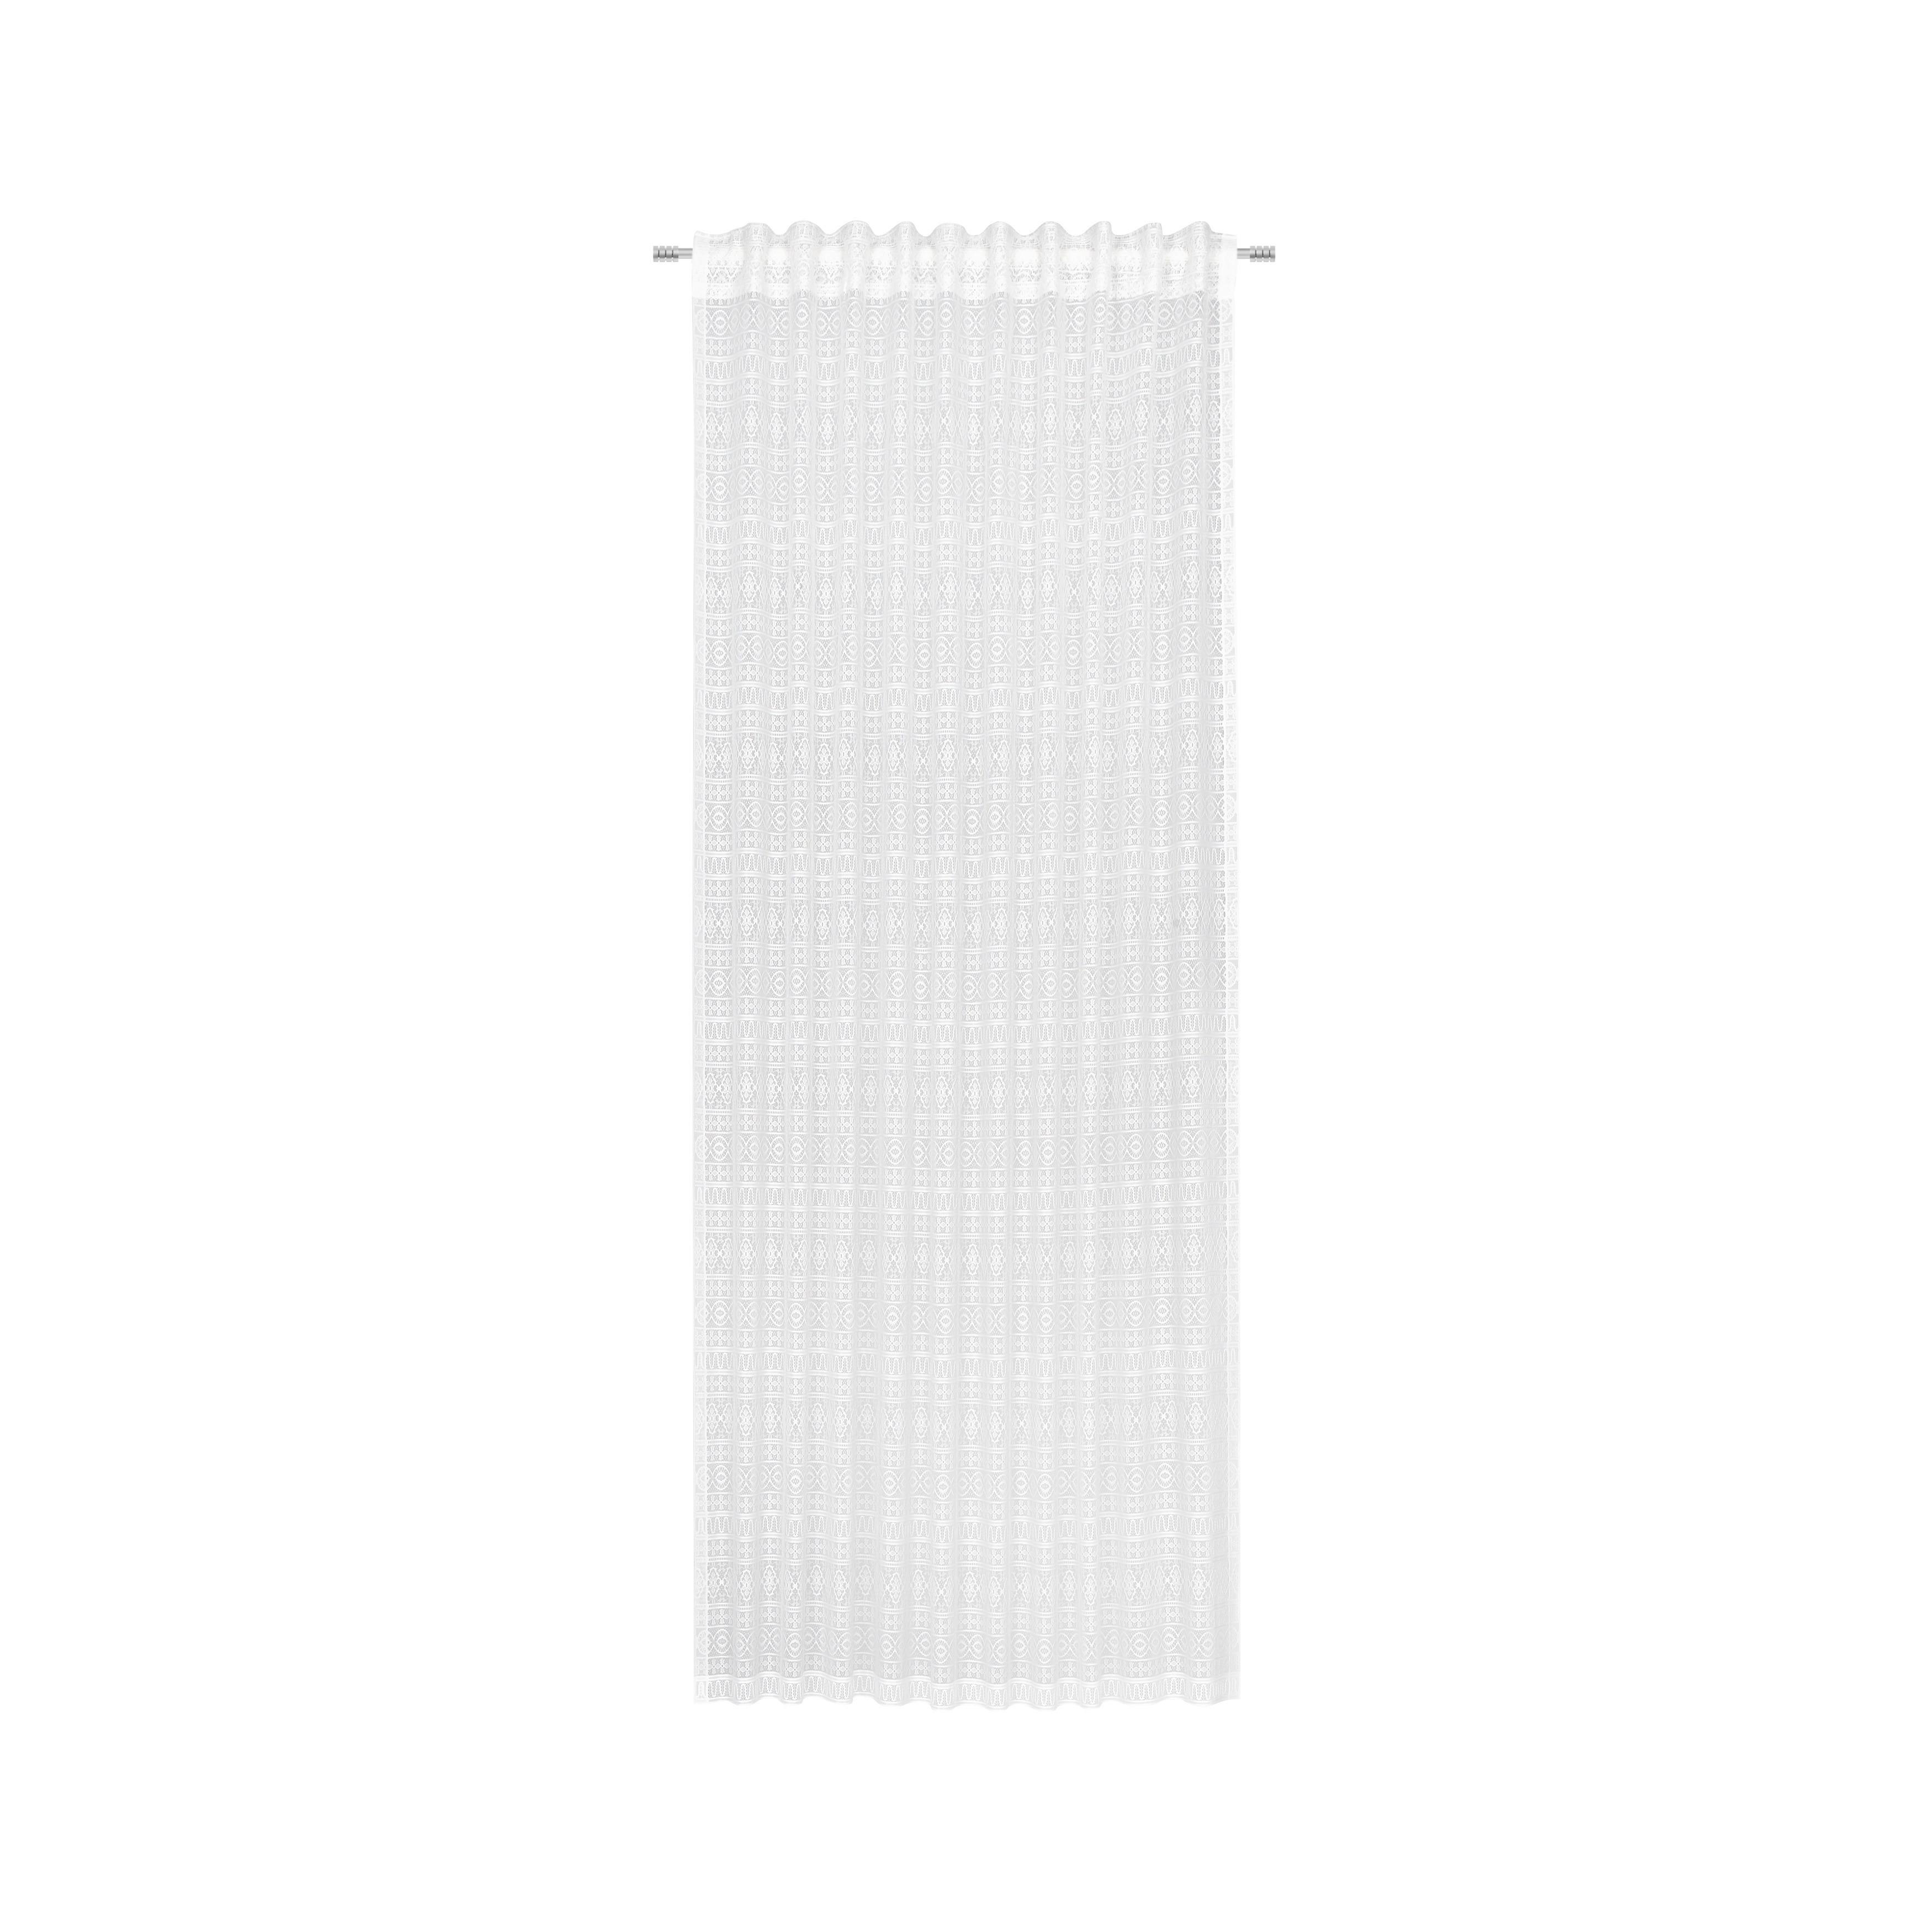 Kombi Készfüggöny Theresa 140/245cm - Fehér, Textil (140/245cm) - Modern Living